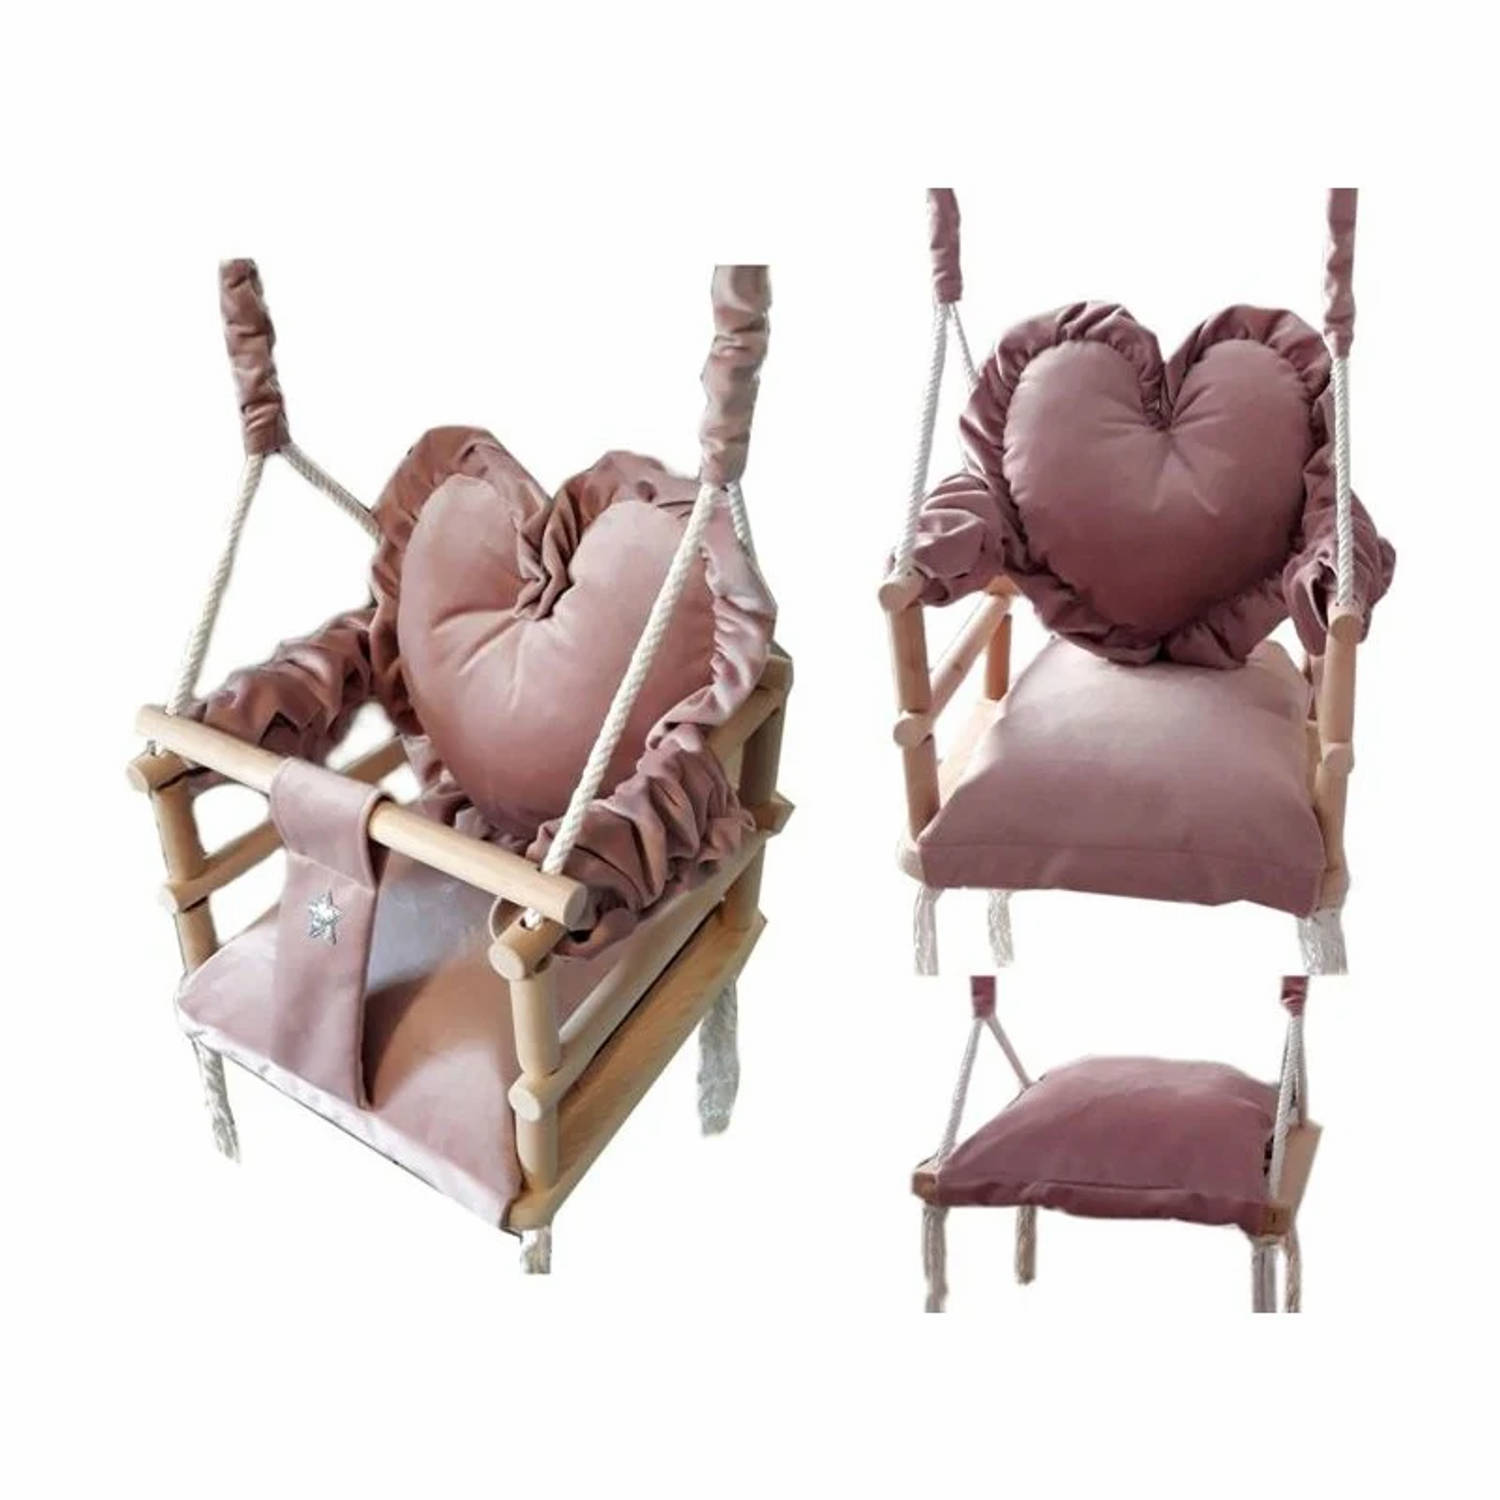 Luxe houten 3 in 1 handgemaakte roze meegroei baby schommel en kinder schommel met hart vormig kussen – Baby swing – Schommel die meegroeit met je kindje - Schommelstoel - Schommel